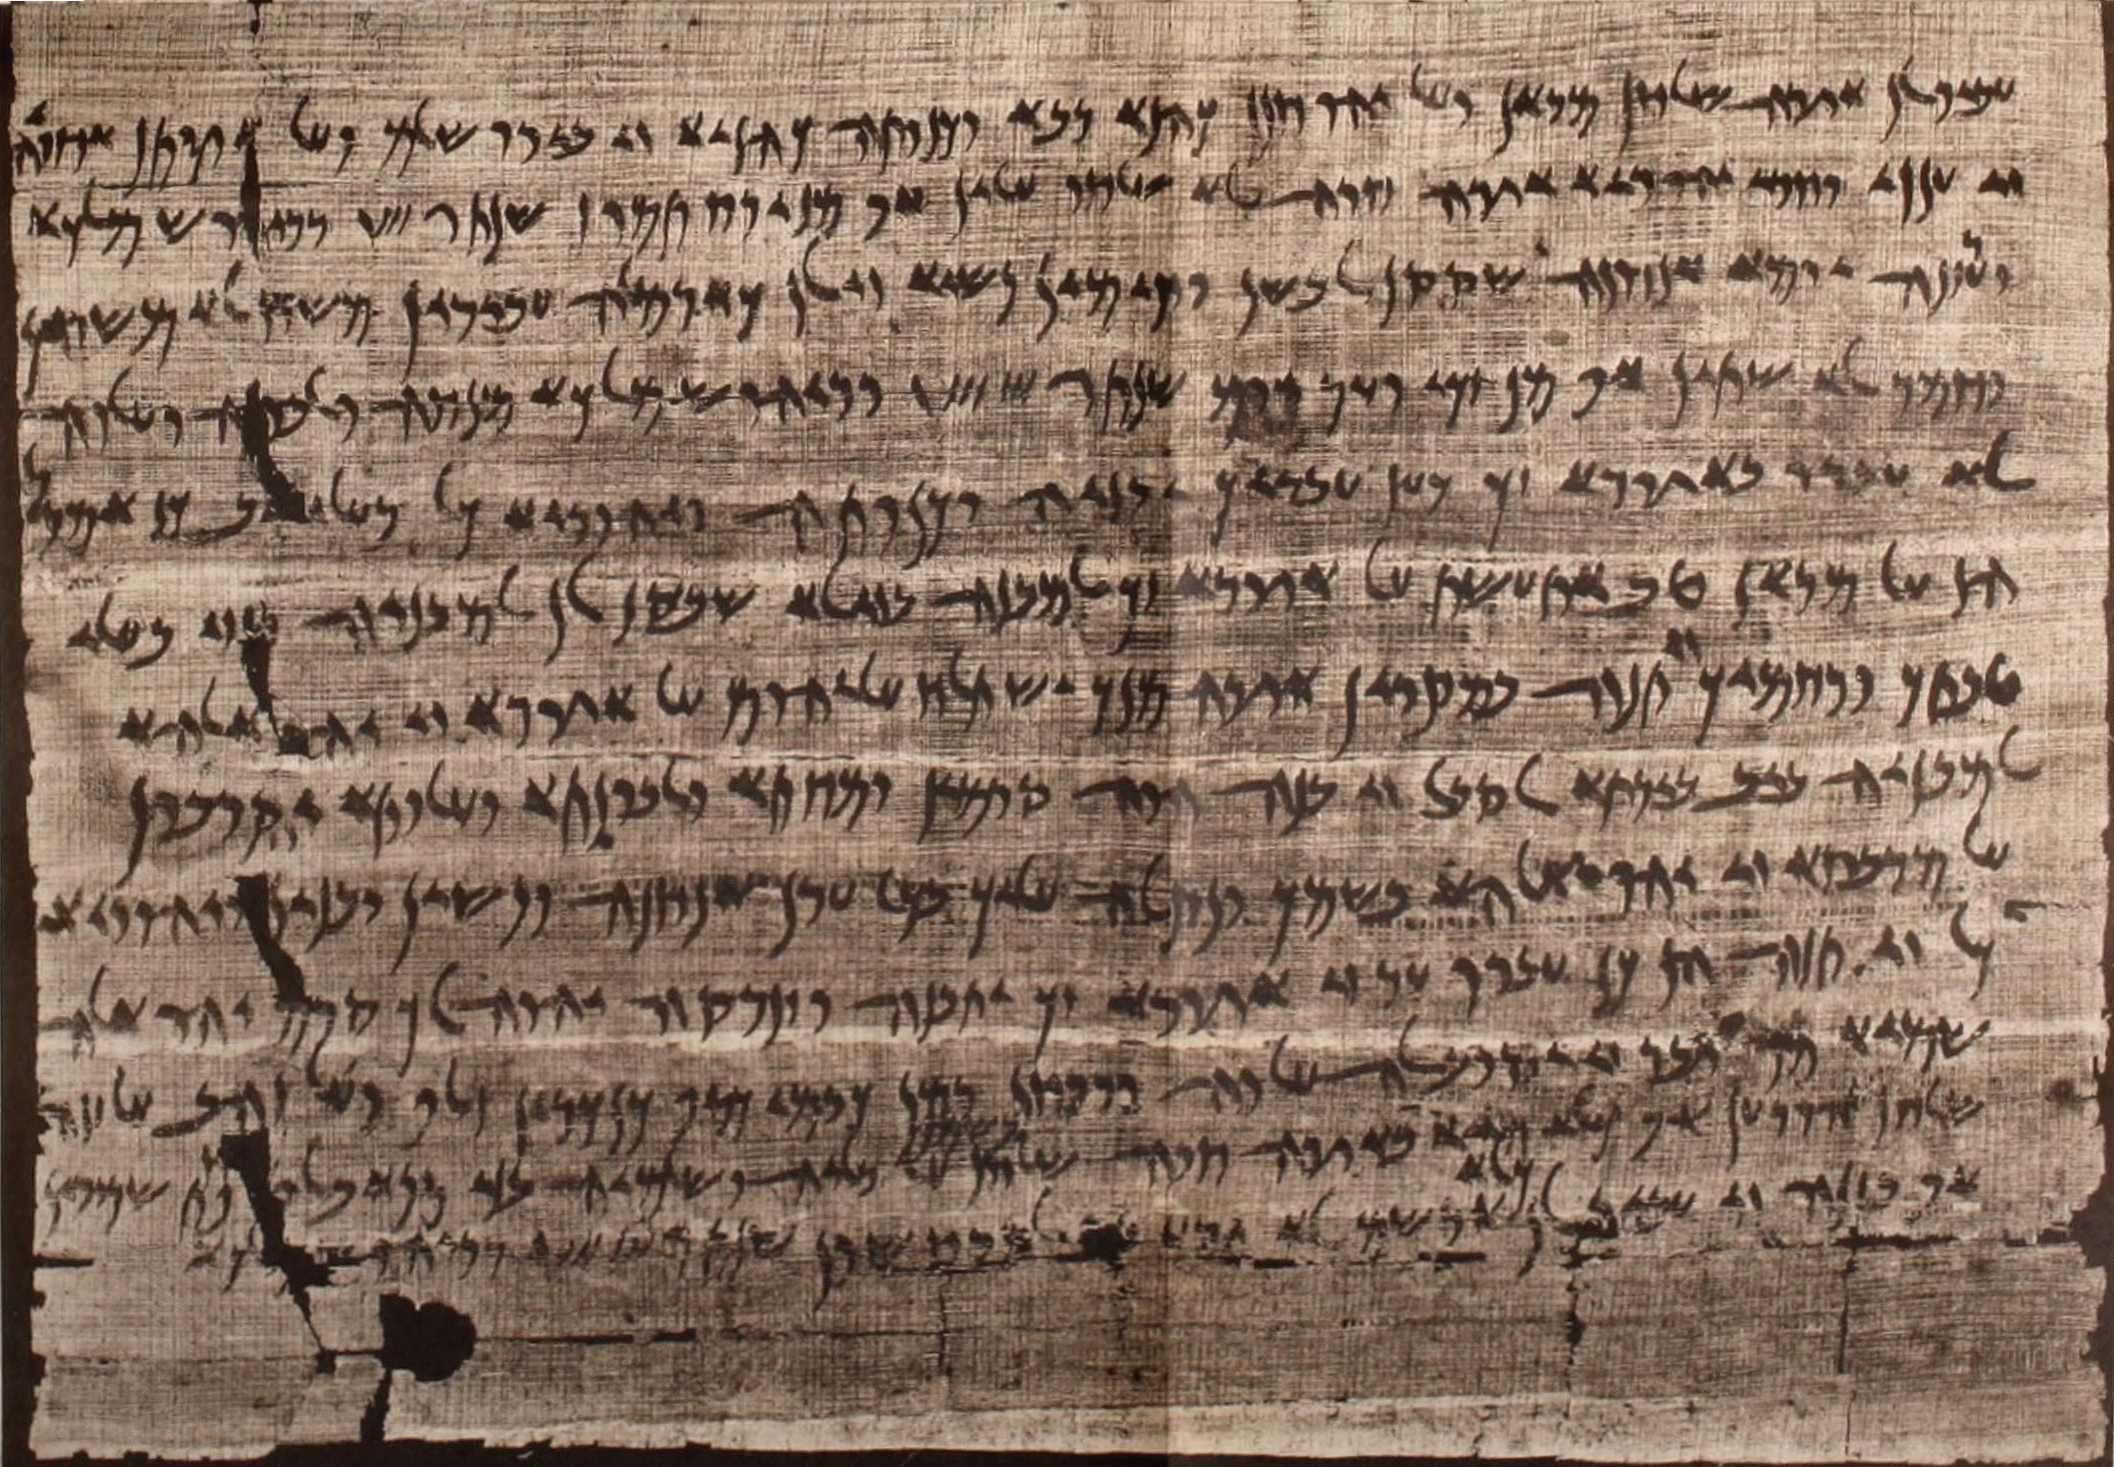 上图：伊里芬丁蒲纸卷（Elephantine papyri，又称象岛古卷）中的一封信，要求在伊里芬丁重建犹太会堂。伊里芬丁蒲纸卷是一批于1903年在埃及尼罗河上的象岛（伊里芬丁岛）找到的亚兰文蒲纸卷。古卷所描述的是以斯拉、尼希米时代以及更早的时期，即主前第五世纪末波斯帝国边区的情况。象岛是当时犹太人侨居埃及的一个社区，亚兰文在波斯时代是外交和贸易的主要语文，成为犹太人的日常语言。 很多圣经上记载的风俗和名称，都在这些文字里找到了详尽说明。其中一份主前419年波斯王大流士二世所颁布的诏书，谕令犹大人守逾越节，佐证了《以斯拉记》中所载波斯王赋予以斯拉权柄推行犹太律法。 古卷亦显示尼希米的对头参巴拉在主前407年已届高龄，与尼希米在主前445年「亚达薛西王二十年」（尼二1）回归耶路撒冷一致。